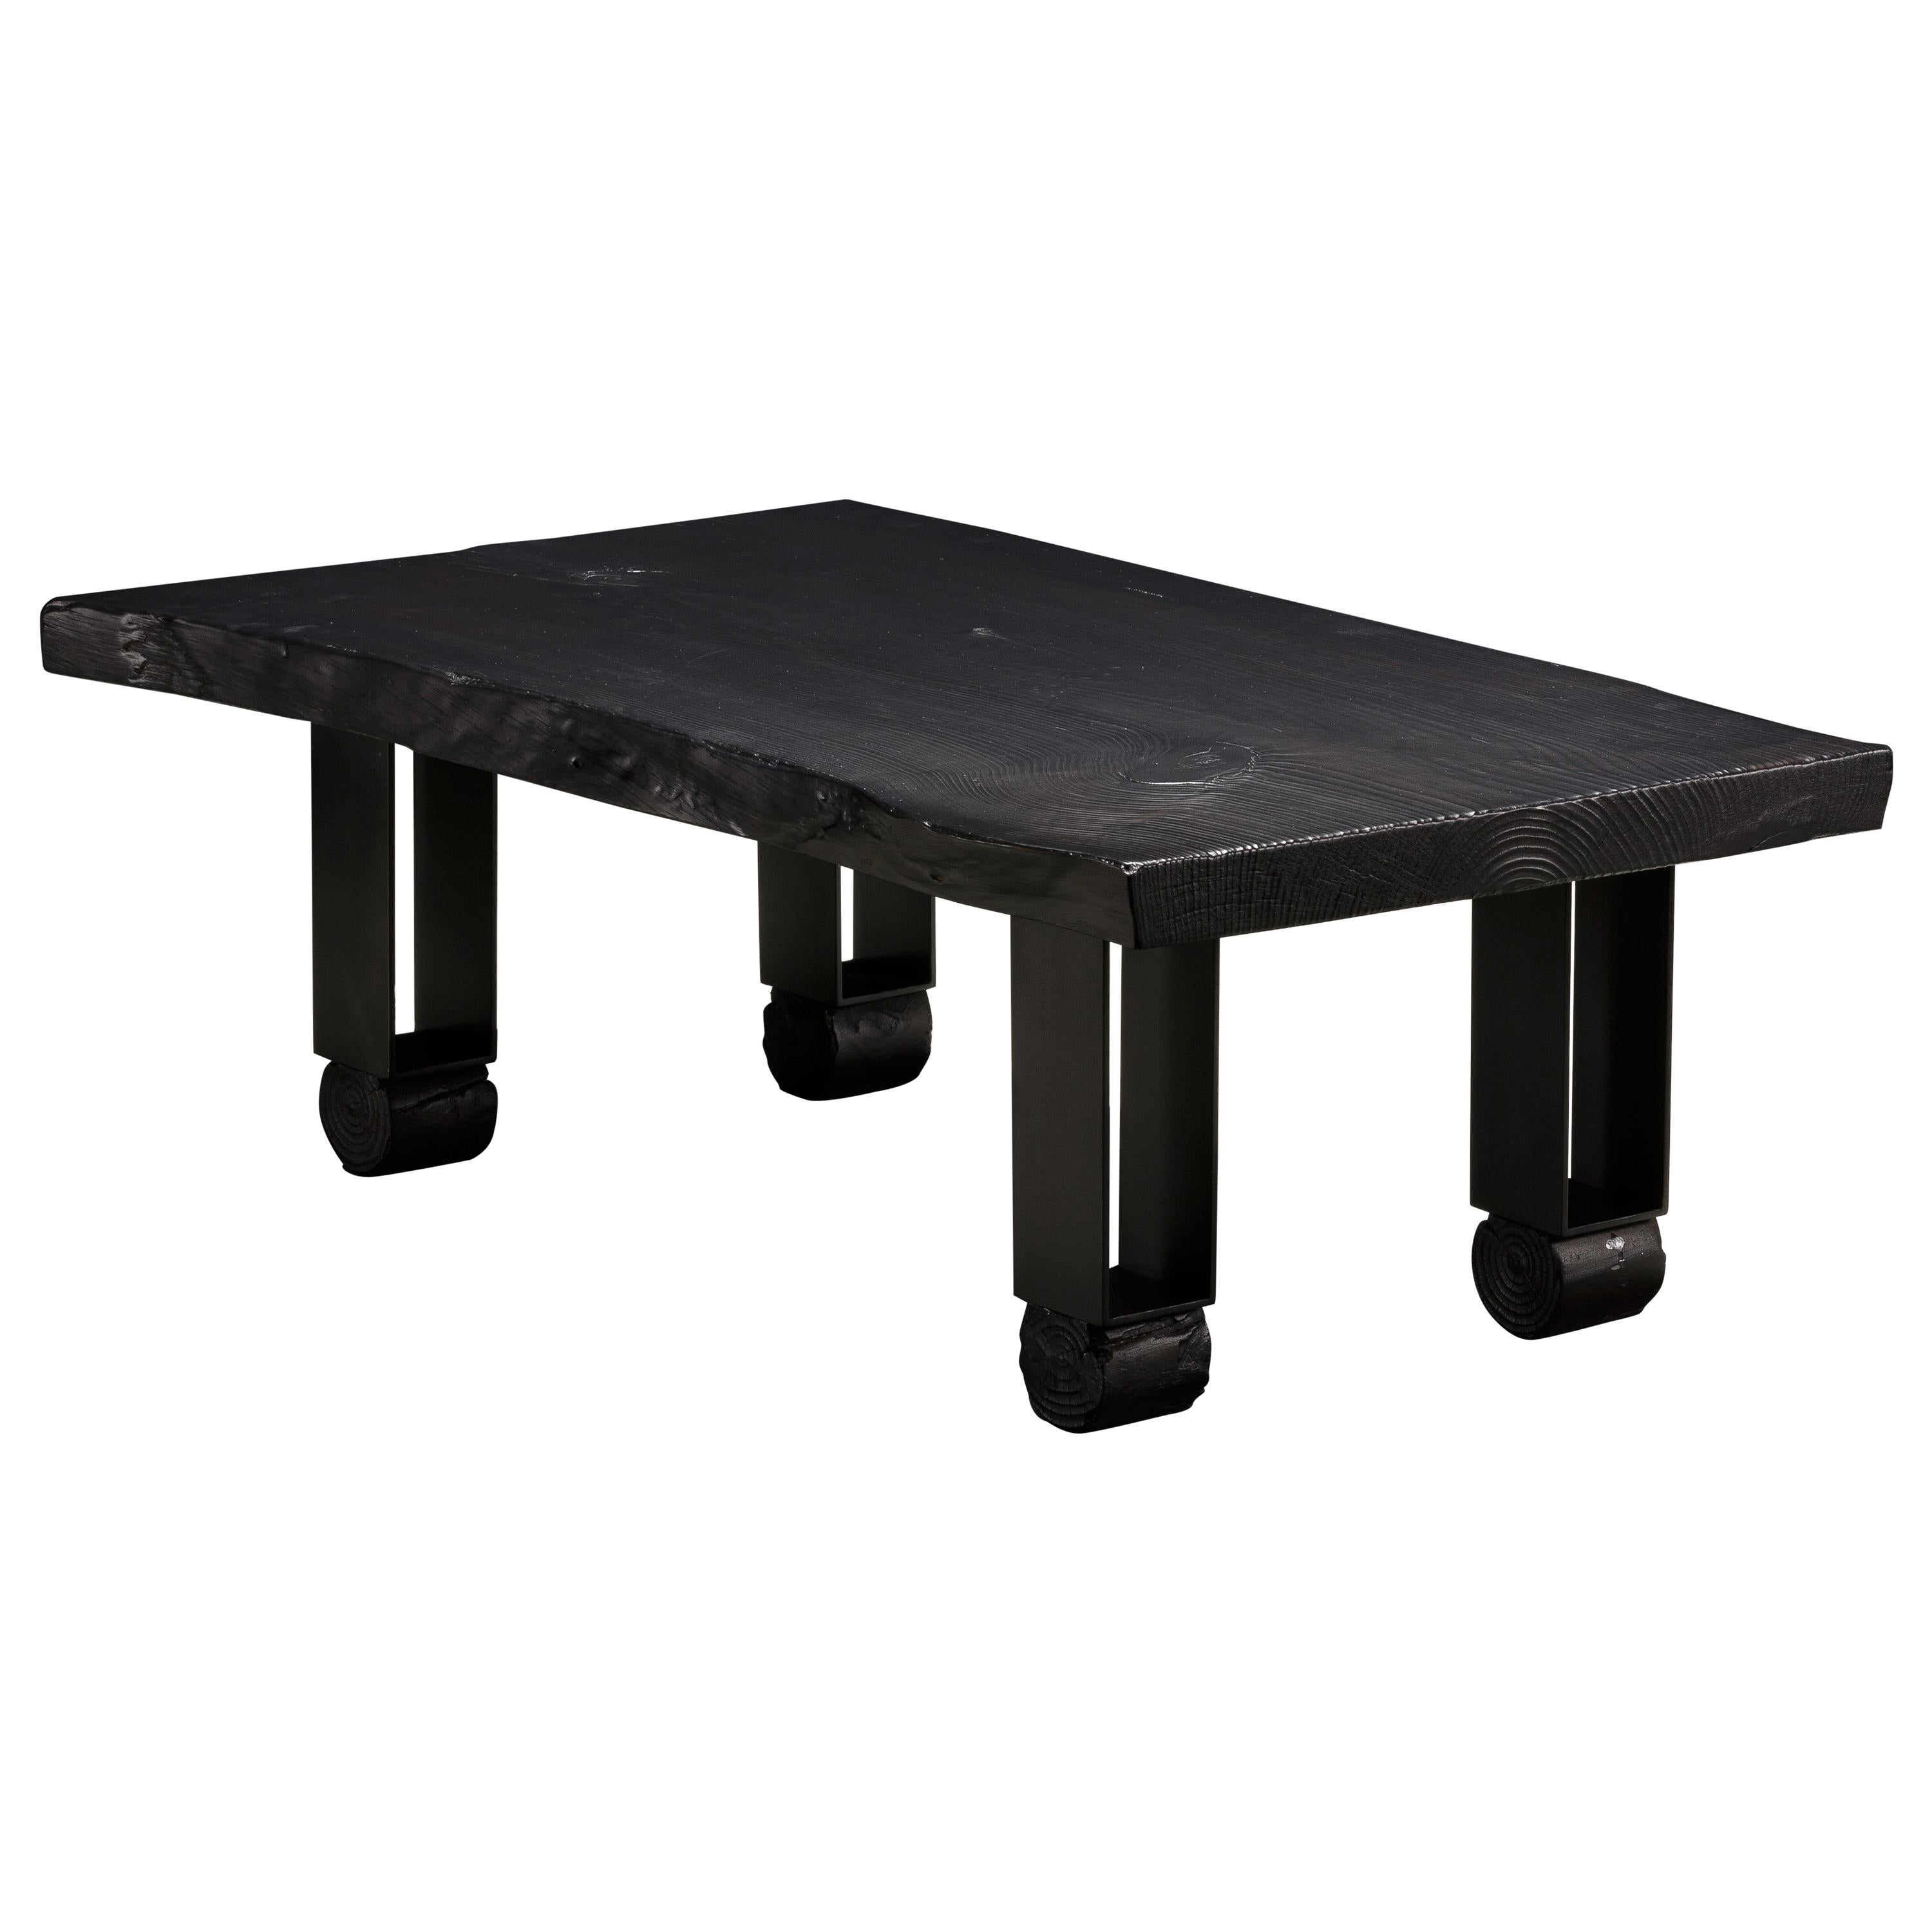 Table basse en pin charré à bord vif avec pieds en acier noir « Willis Coffee Table ».